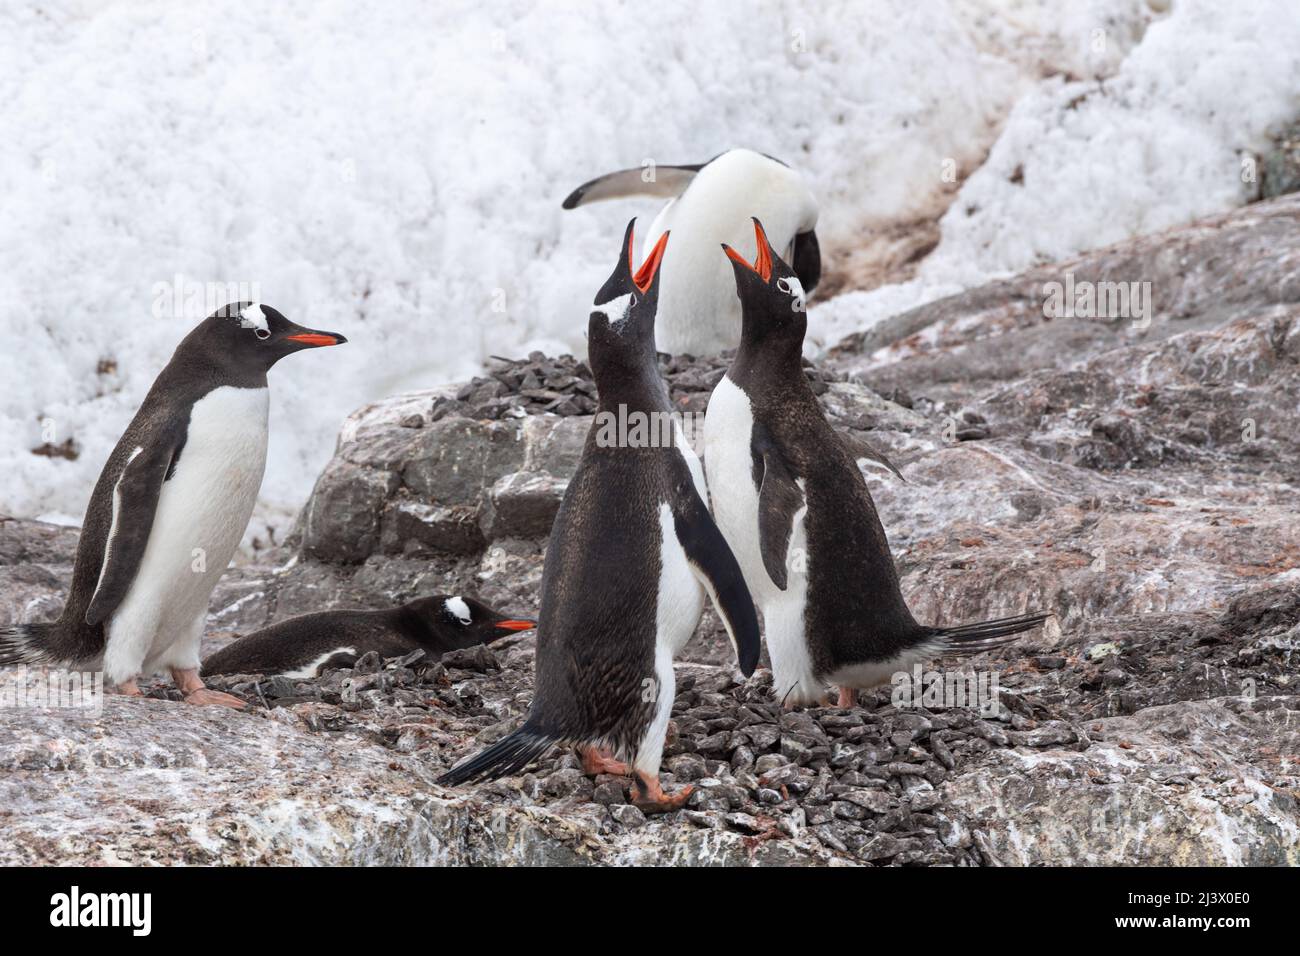 Gentoo-Pinguine um ein Steinnest herum, einer ruht auf dem Boden. Zwei Pinguine machen einen Ruf. Antarktis Stockfoto